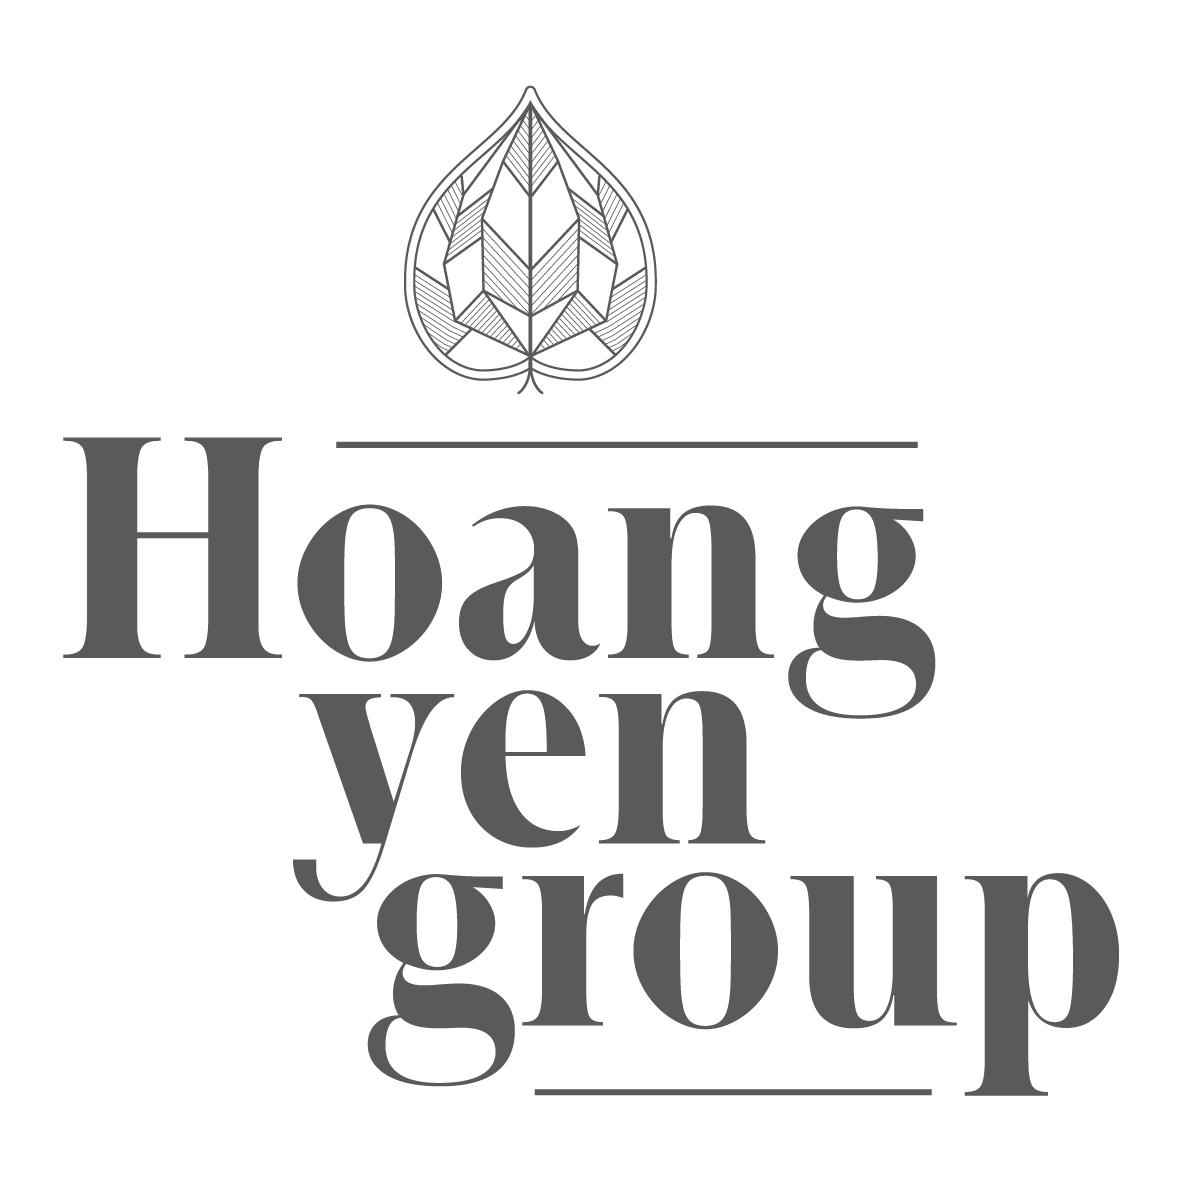 TẠP VỤ BẾP - Q. TÂN PHÚ (Q) ở Hoàng Yến Group - Hoteljob ...